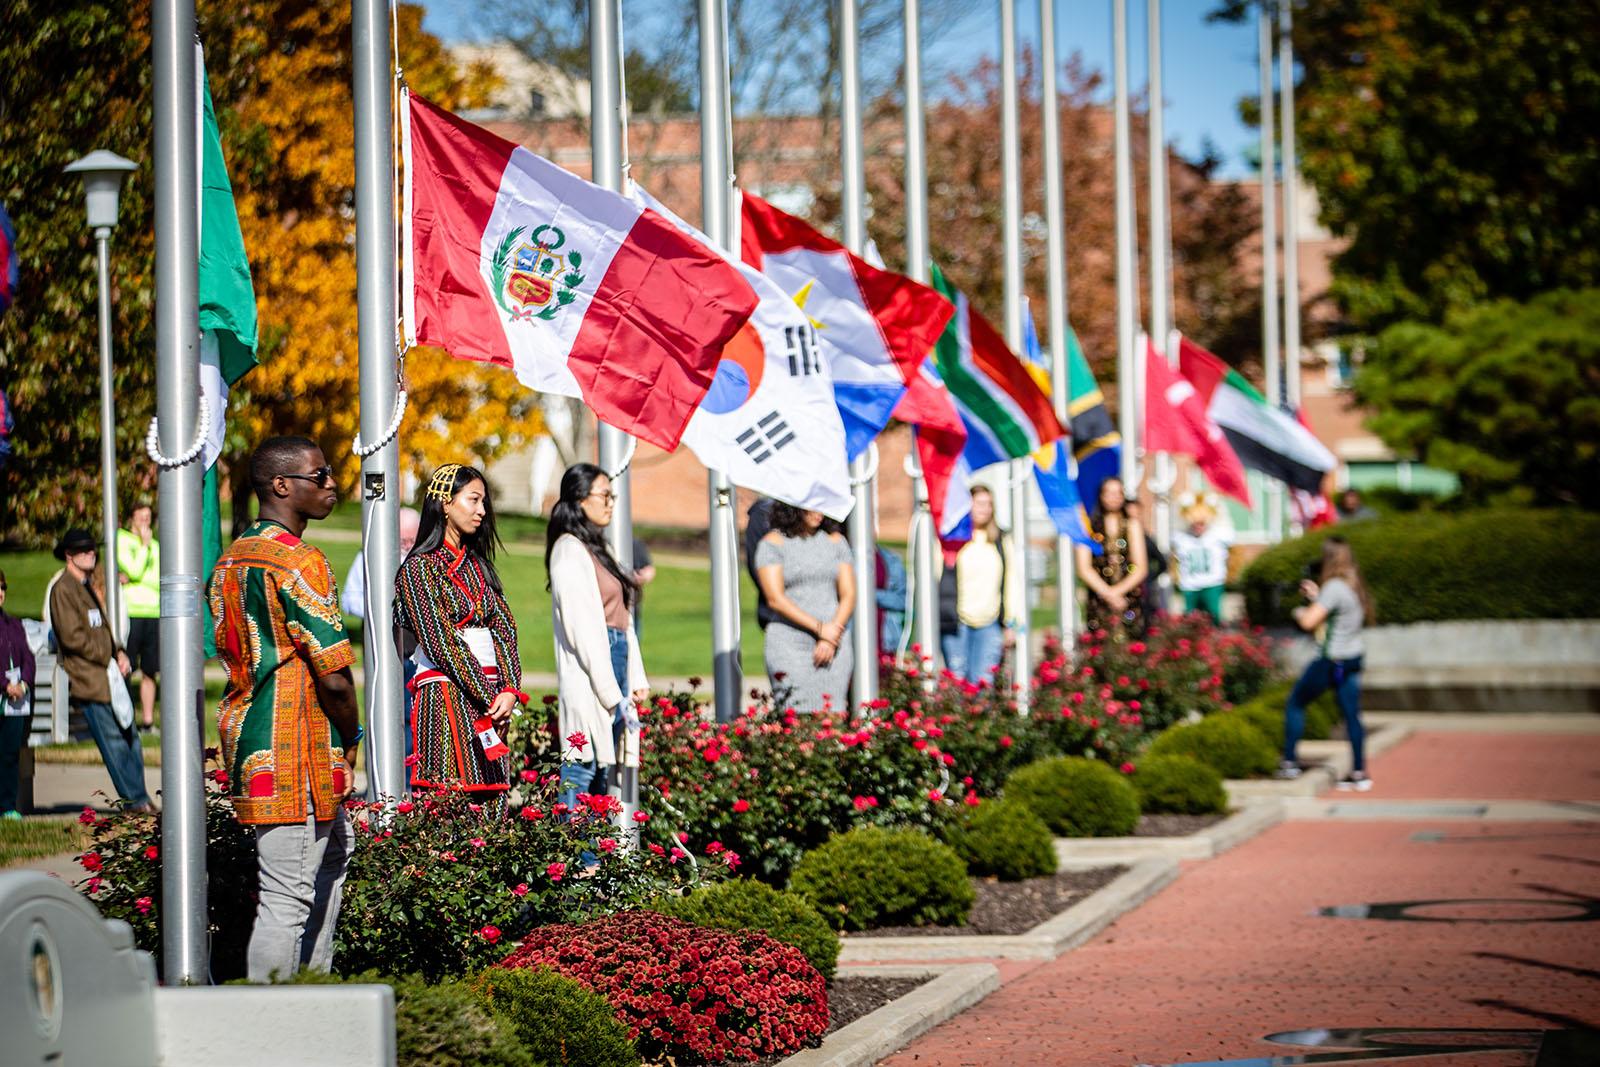 和记棋牌娱乐的国际学生在每年秋天的返校节活动中都会参加升旗仪式，以庆祝他们的家乡和文化以及大学的多样性. 